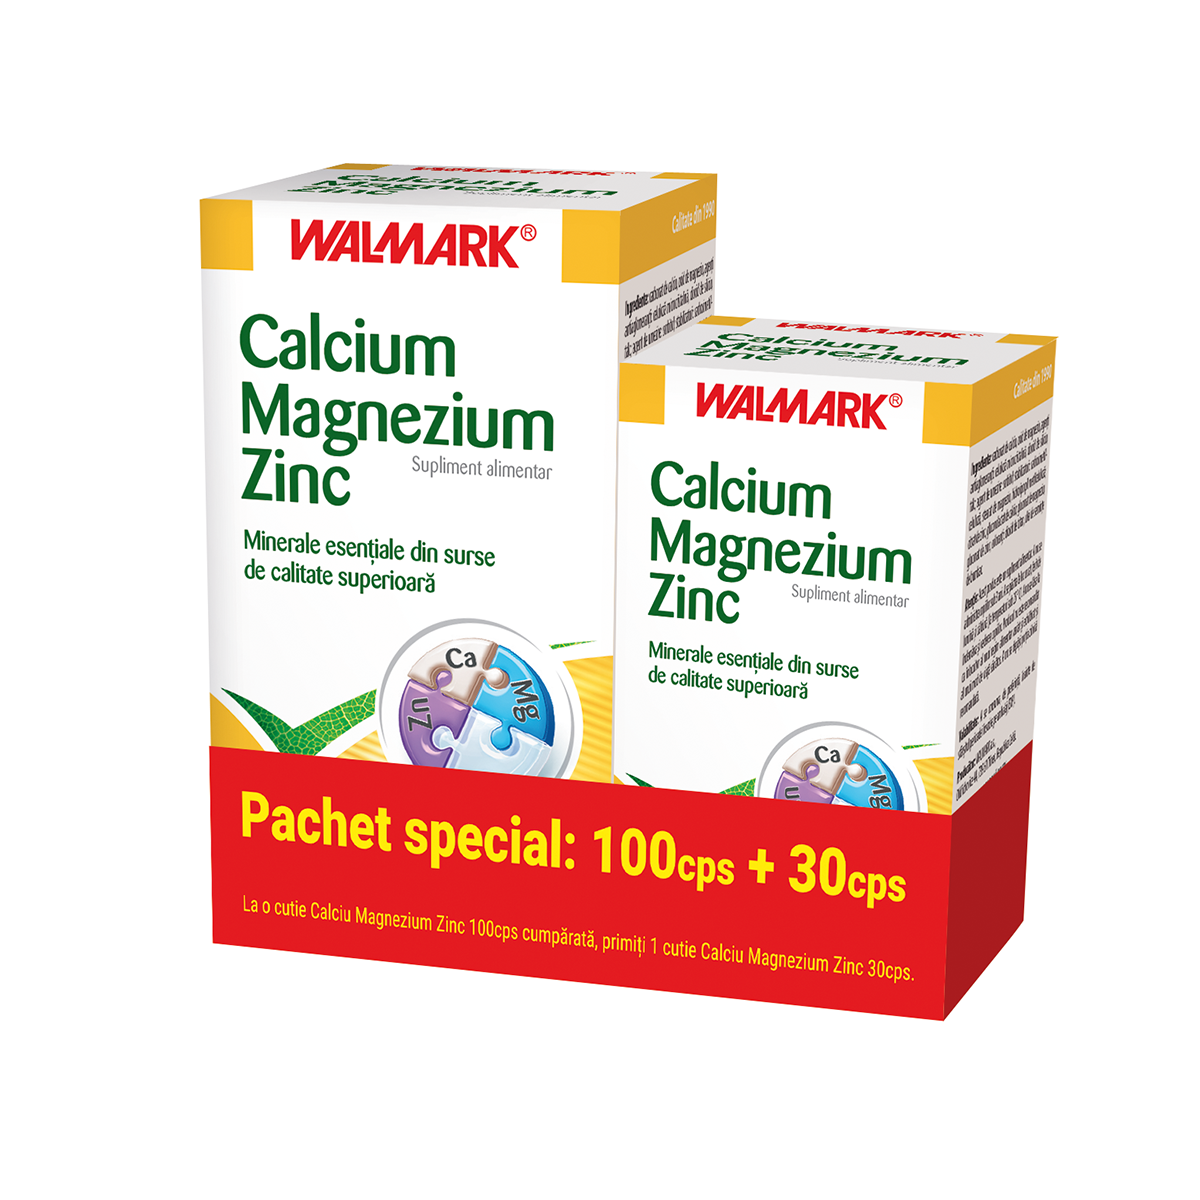 Uz general - Calcium Magnezium Zinc, 100+30 tablete promo, Walmark, sinapis.ro